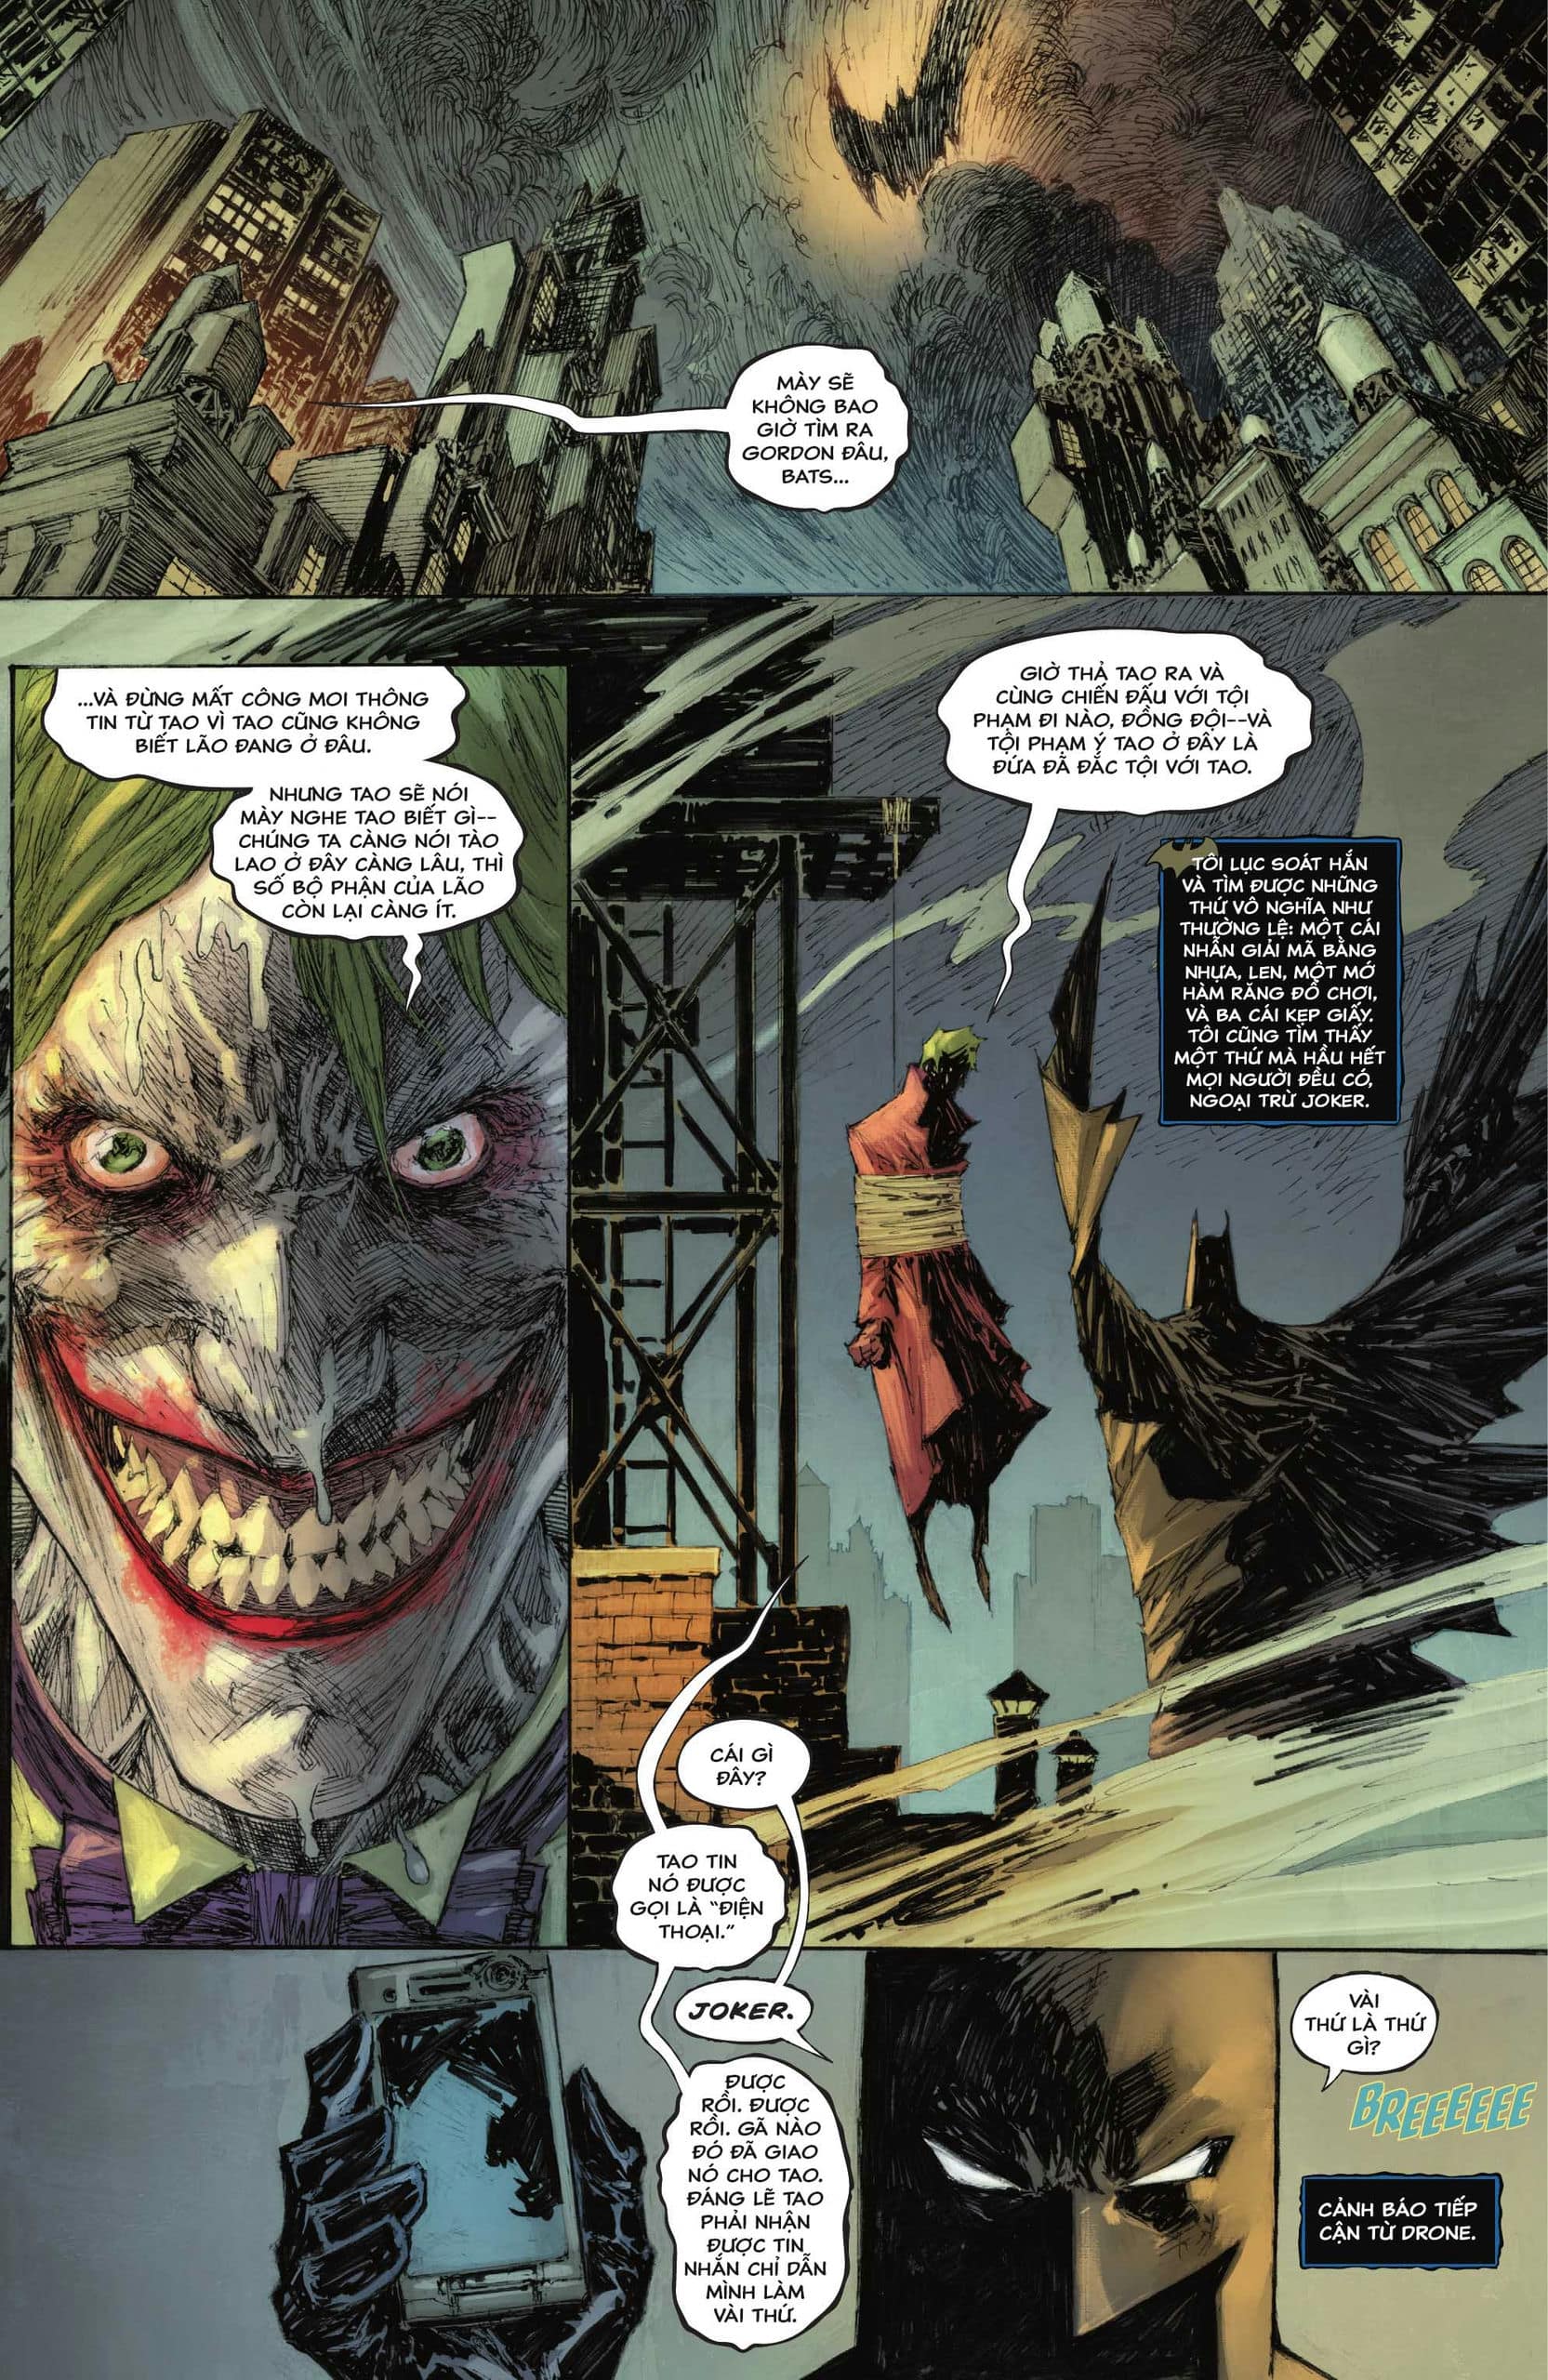 https://langgeek.net/wp-content/webpc-passthru.php?src=https://langgeek.net/wp-content/uploads/2022/12/Batman-The-Joker-The-Deadly-Duo-2022-002-005.jpg&nocache=1